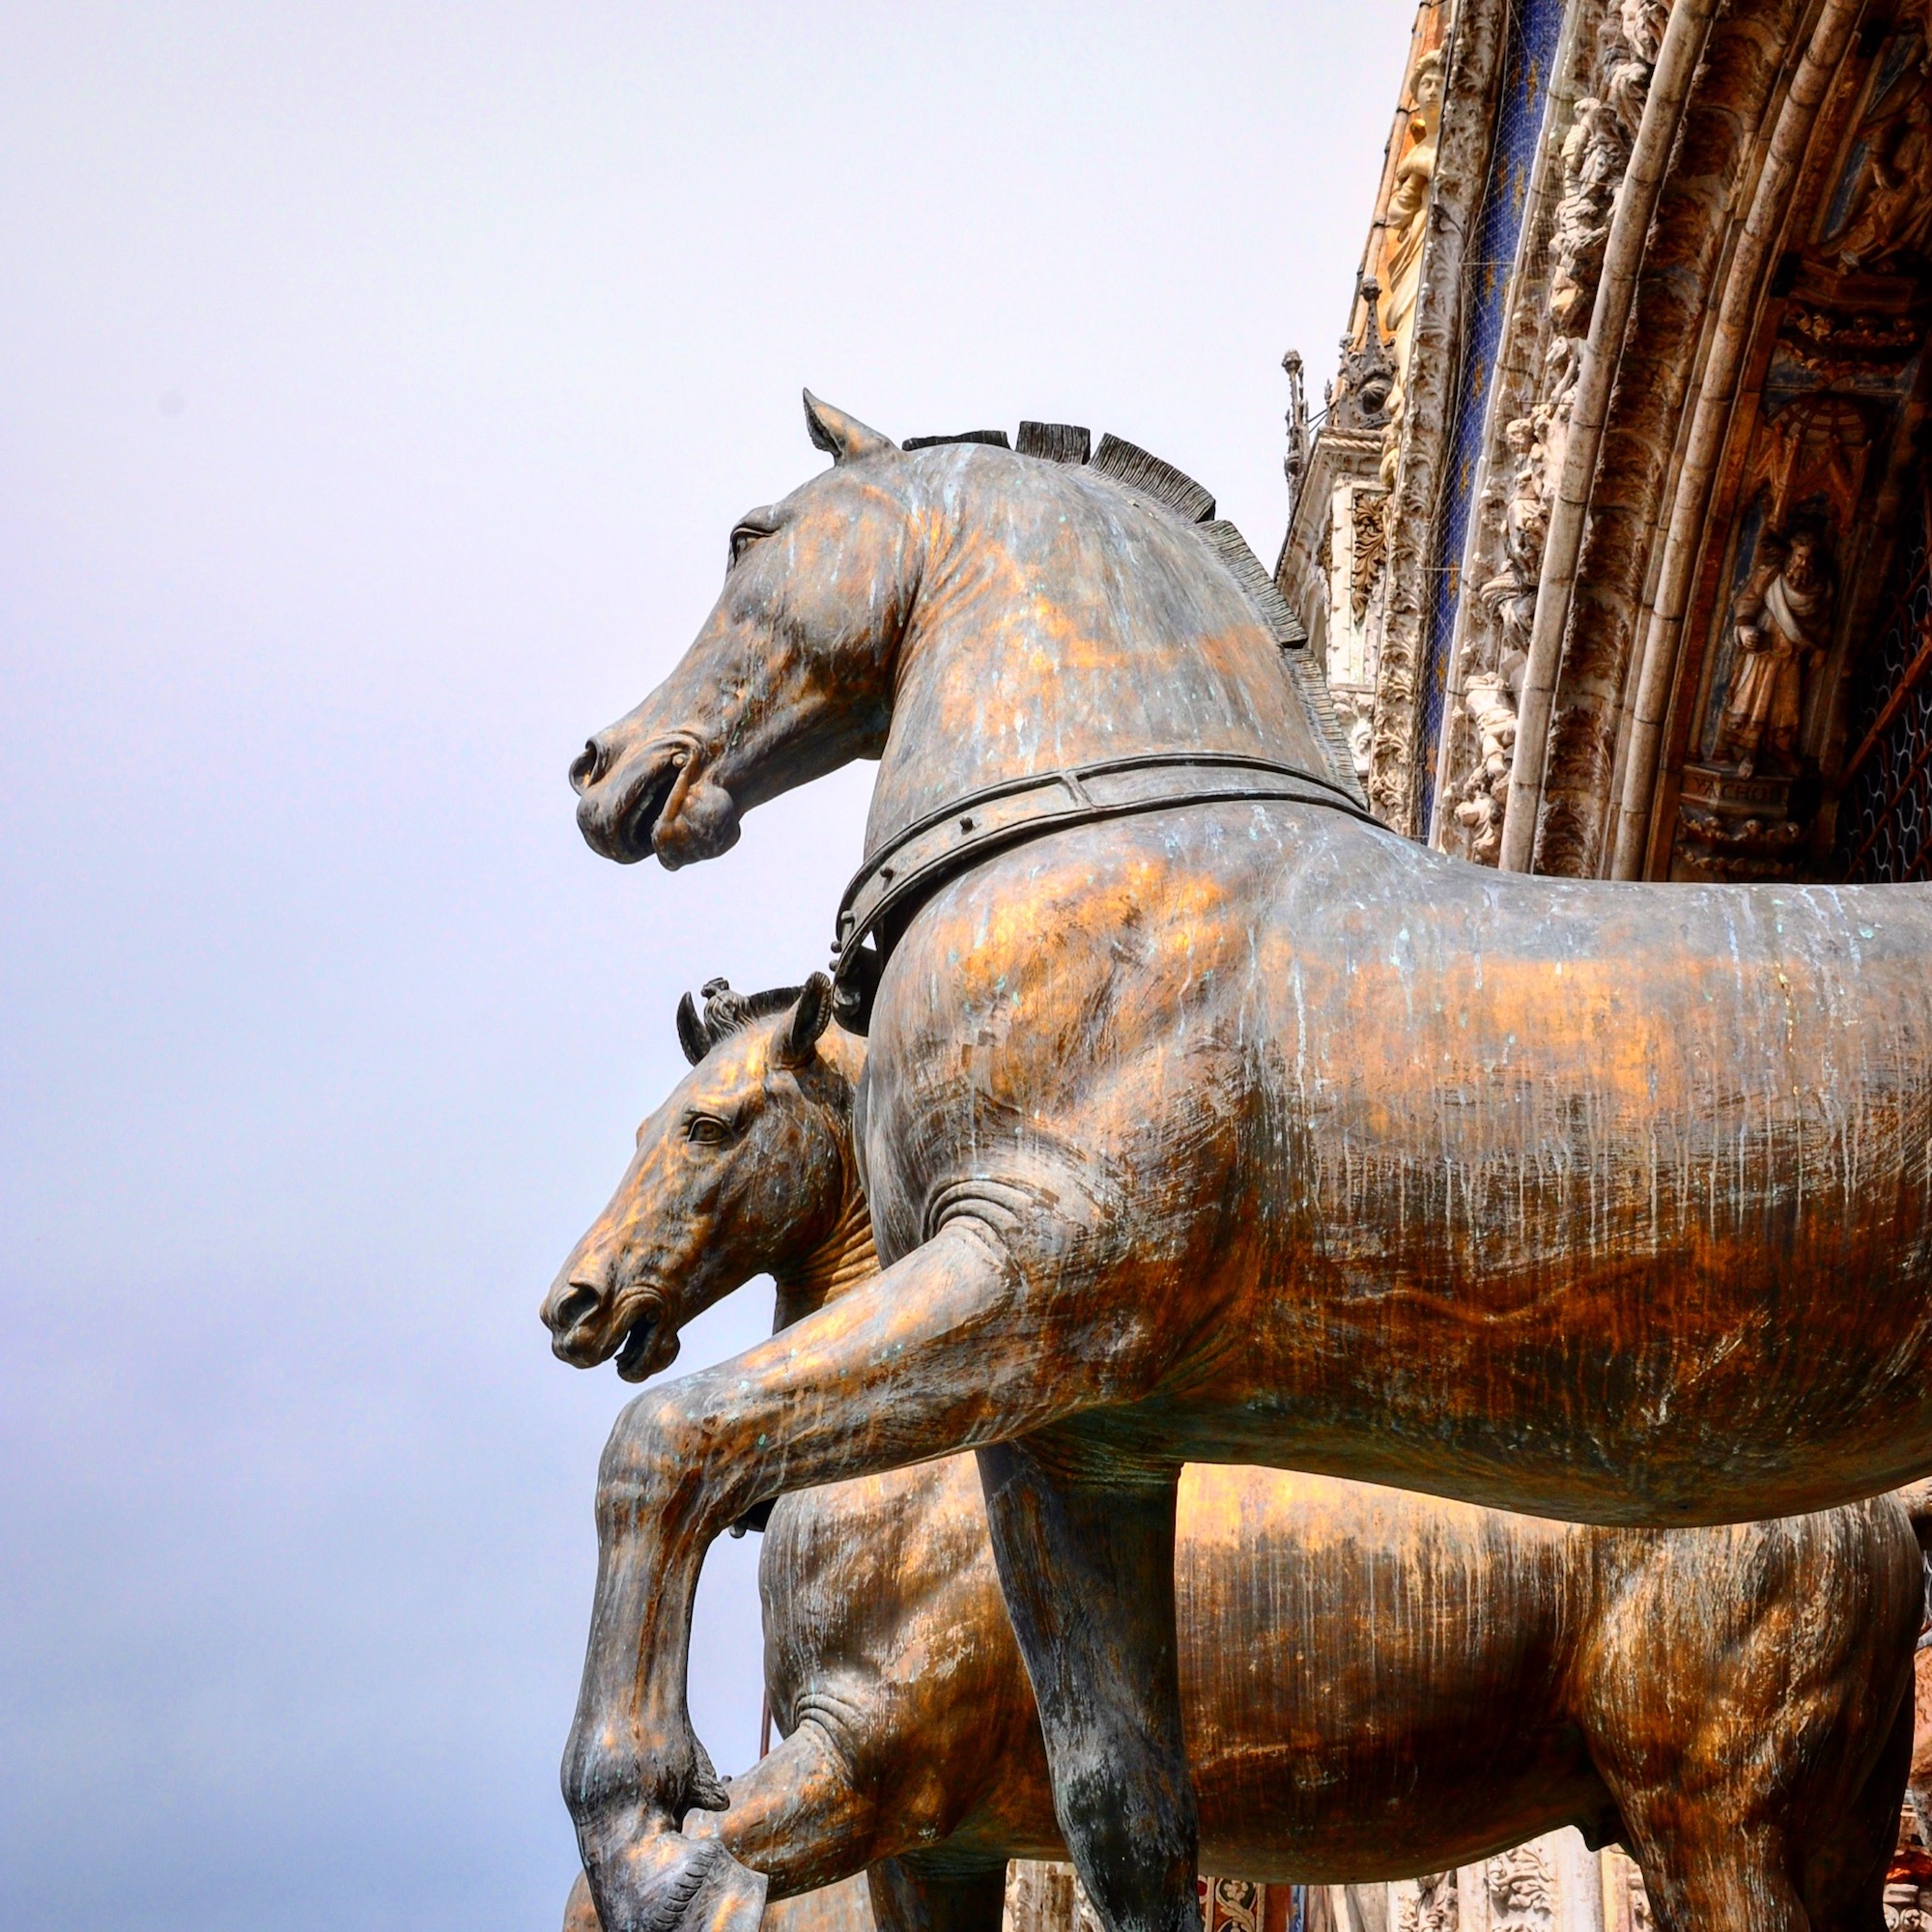 Four horses of St. Mark's Church Venice